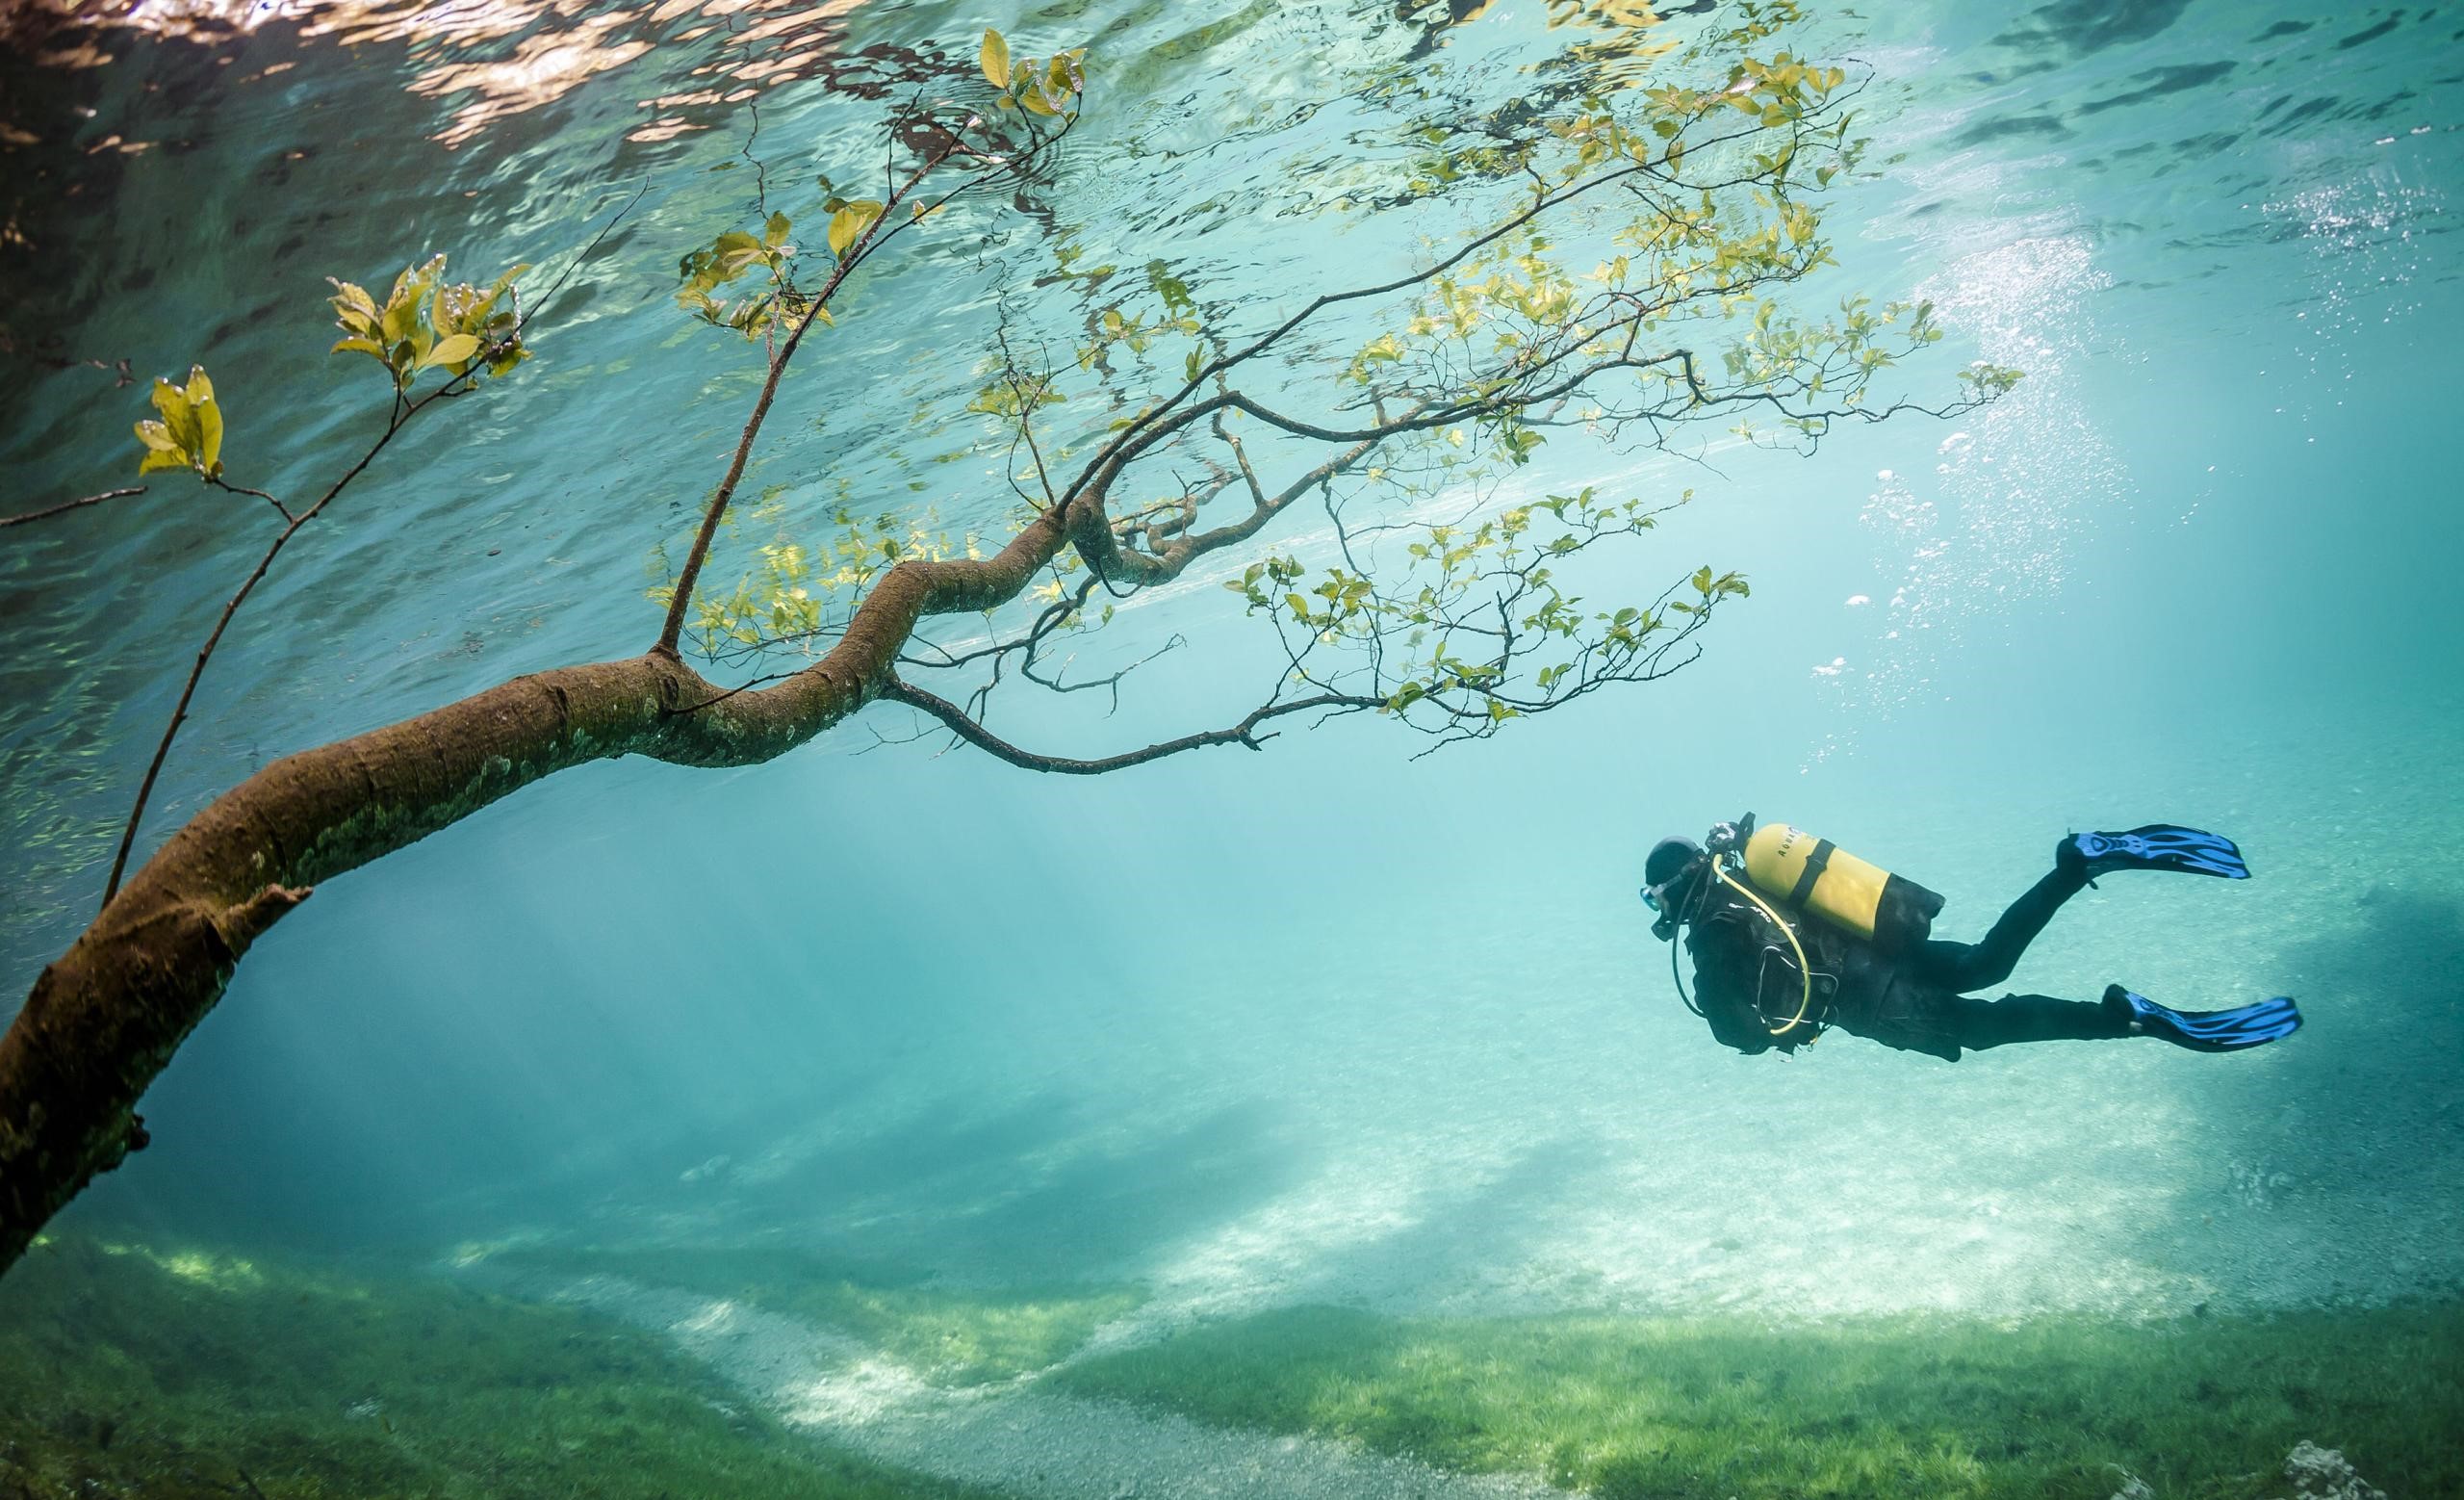 نقاشی شاهکار غواص و درخت سبز در دریای آبی رویایی